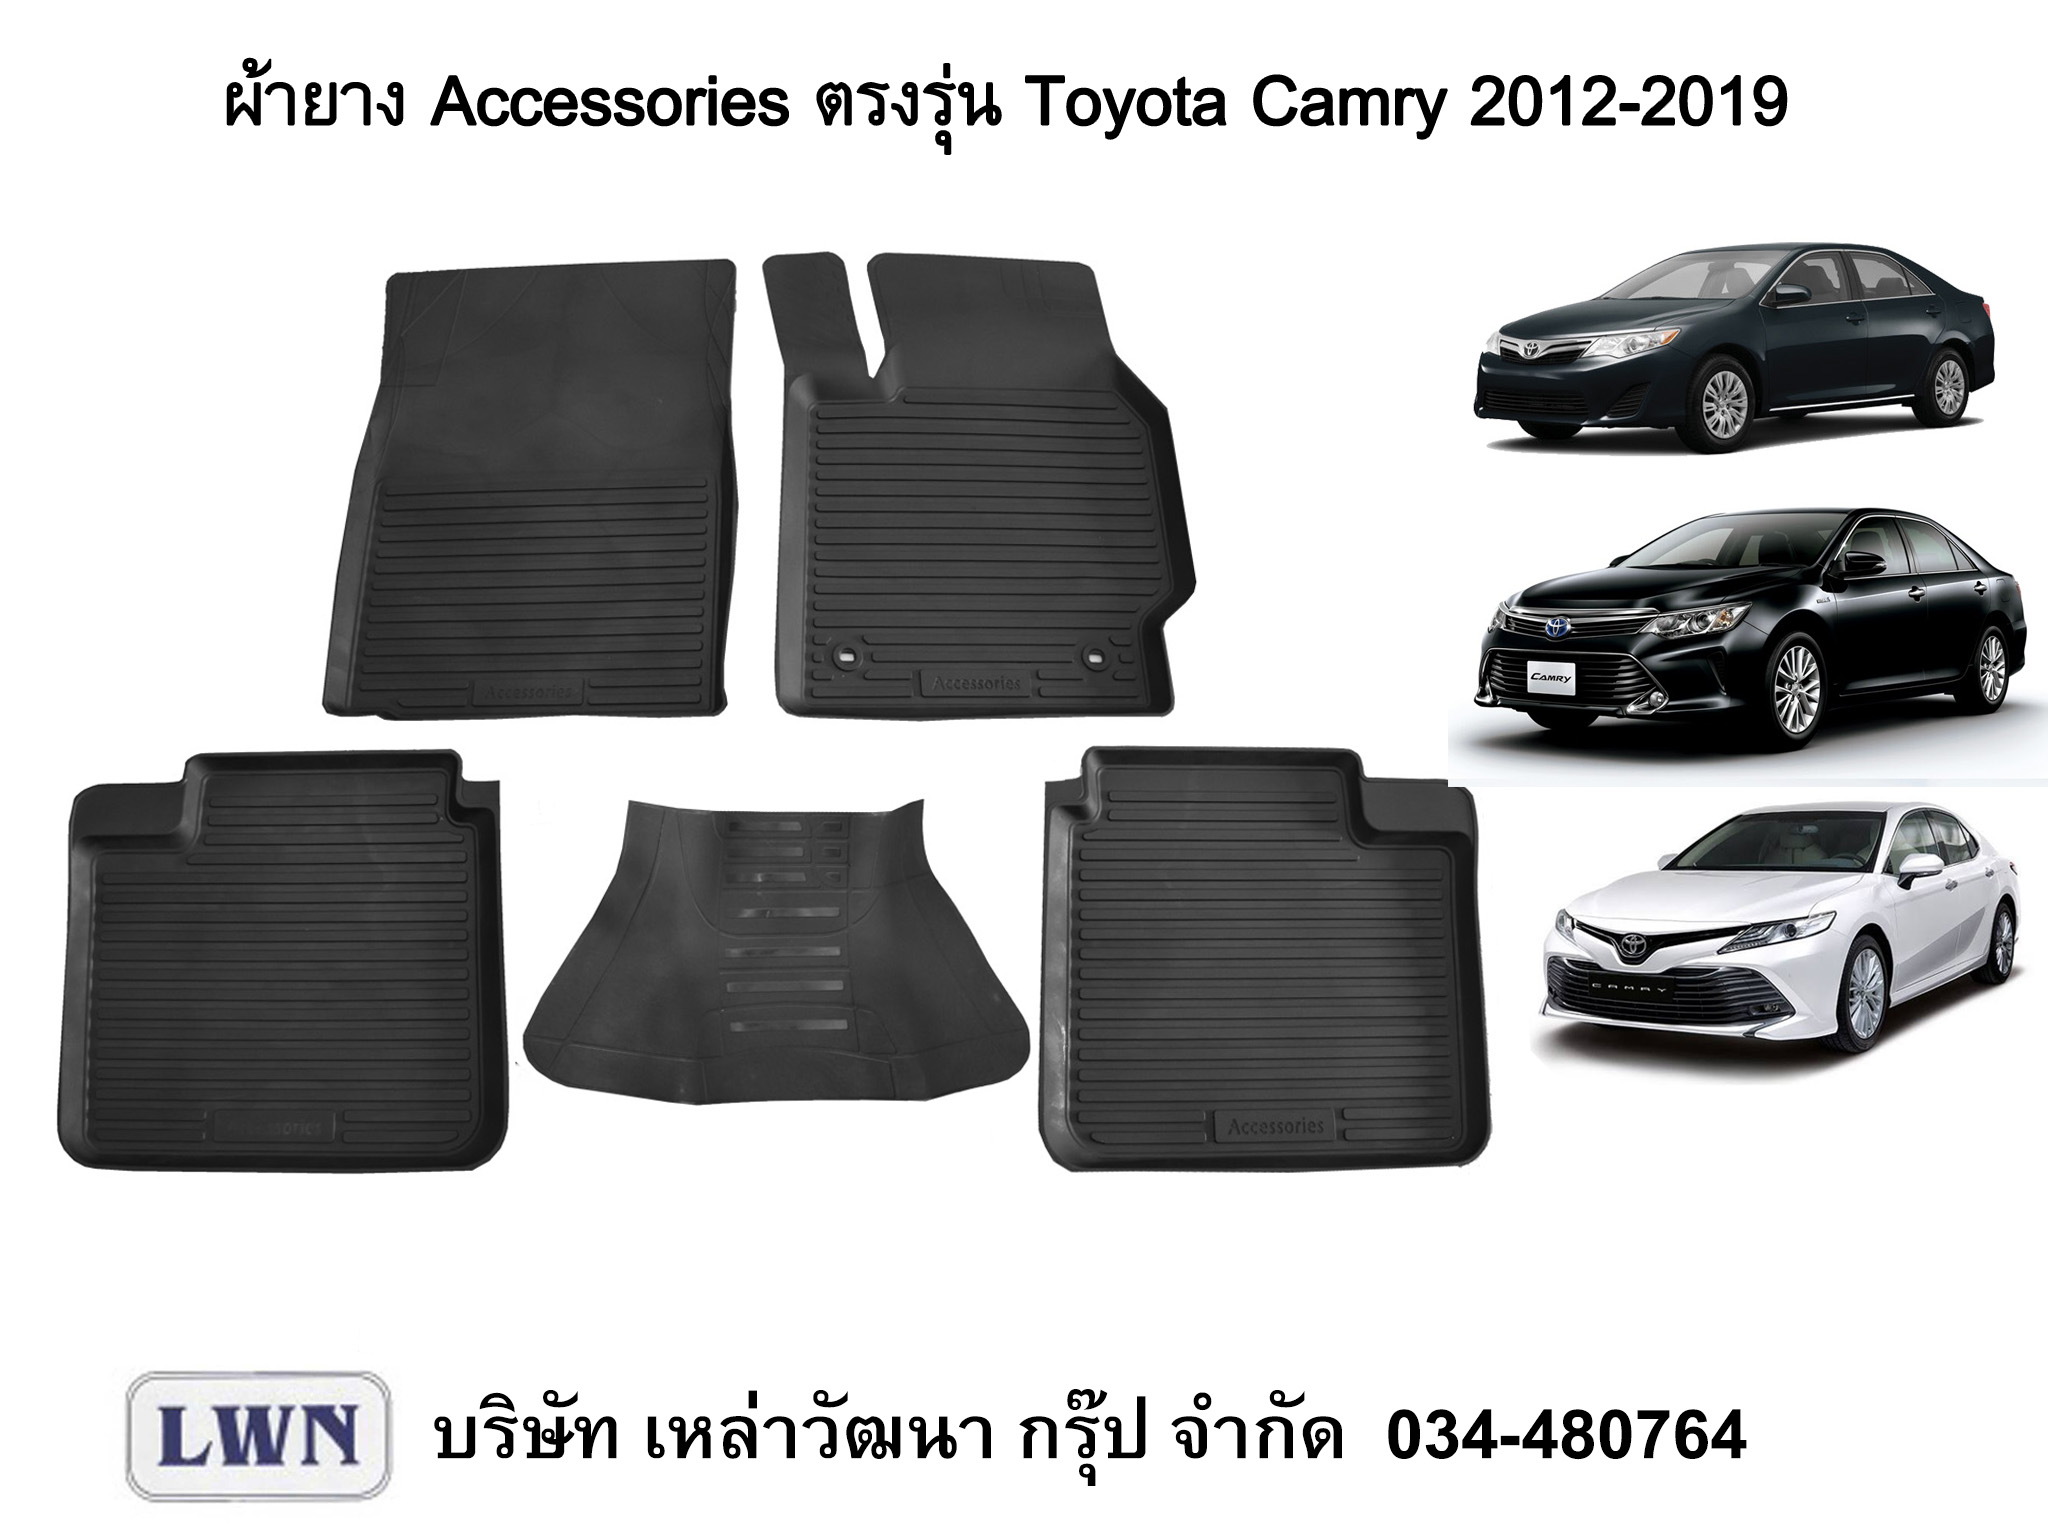 ผ้ายางปูพื้น Toyota Camry 2012-2020